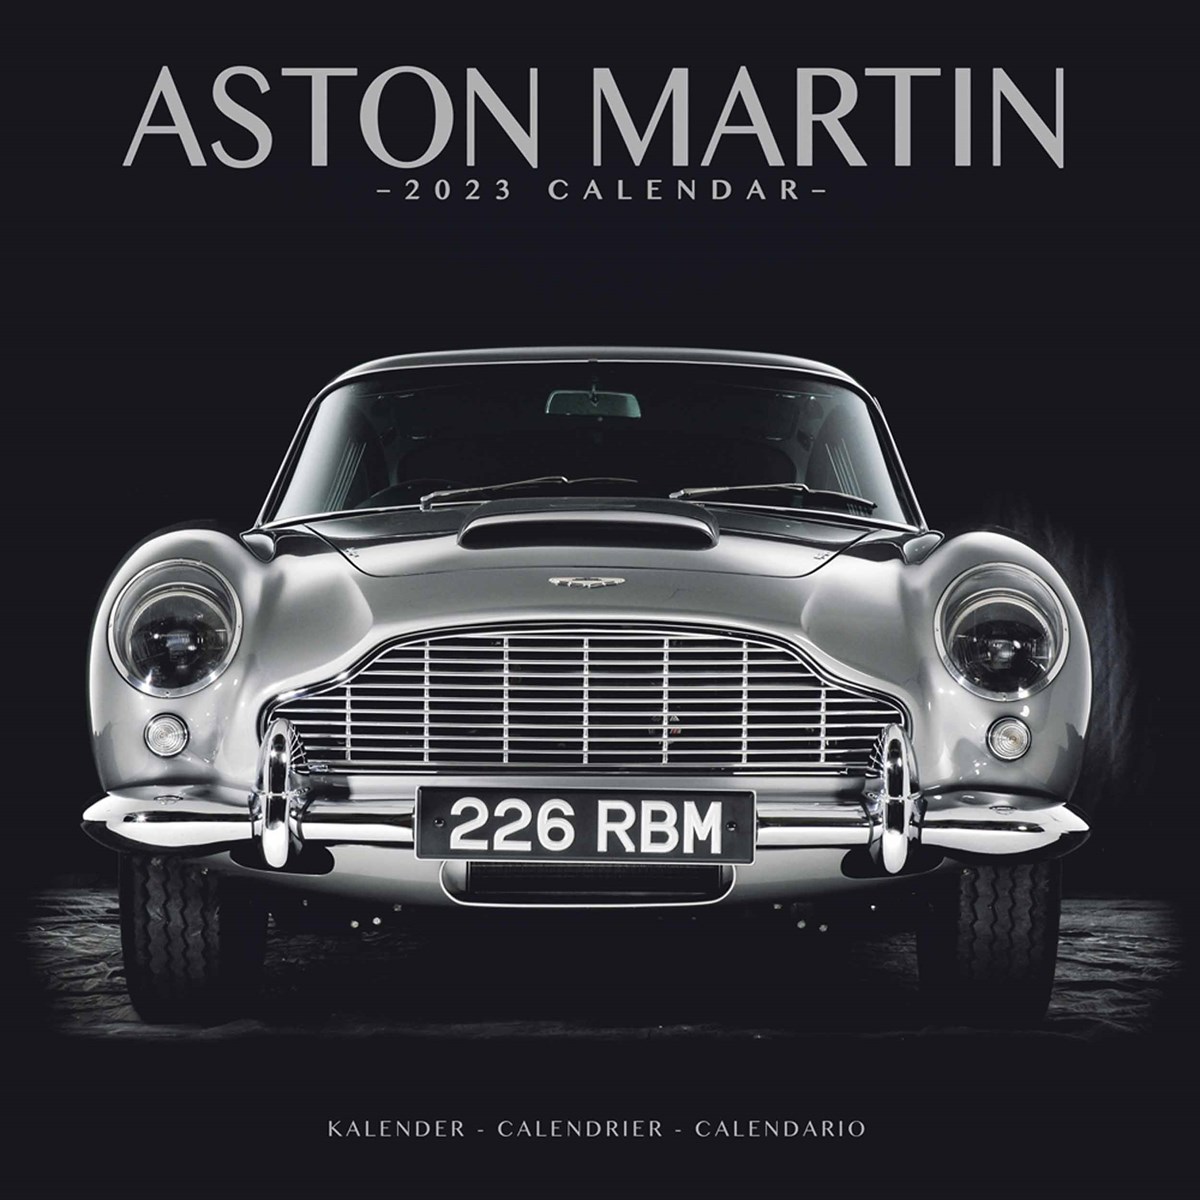 Aston Martin 2023 Calendars